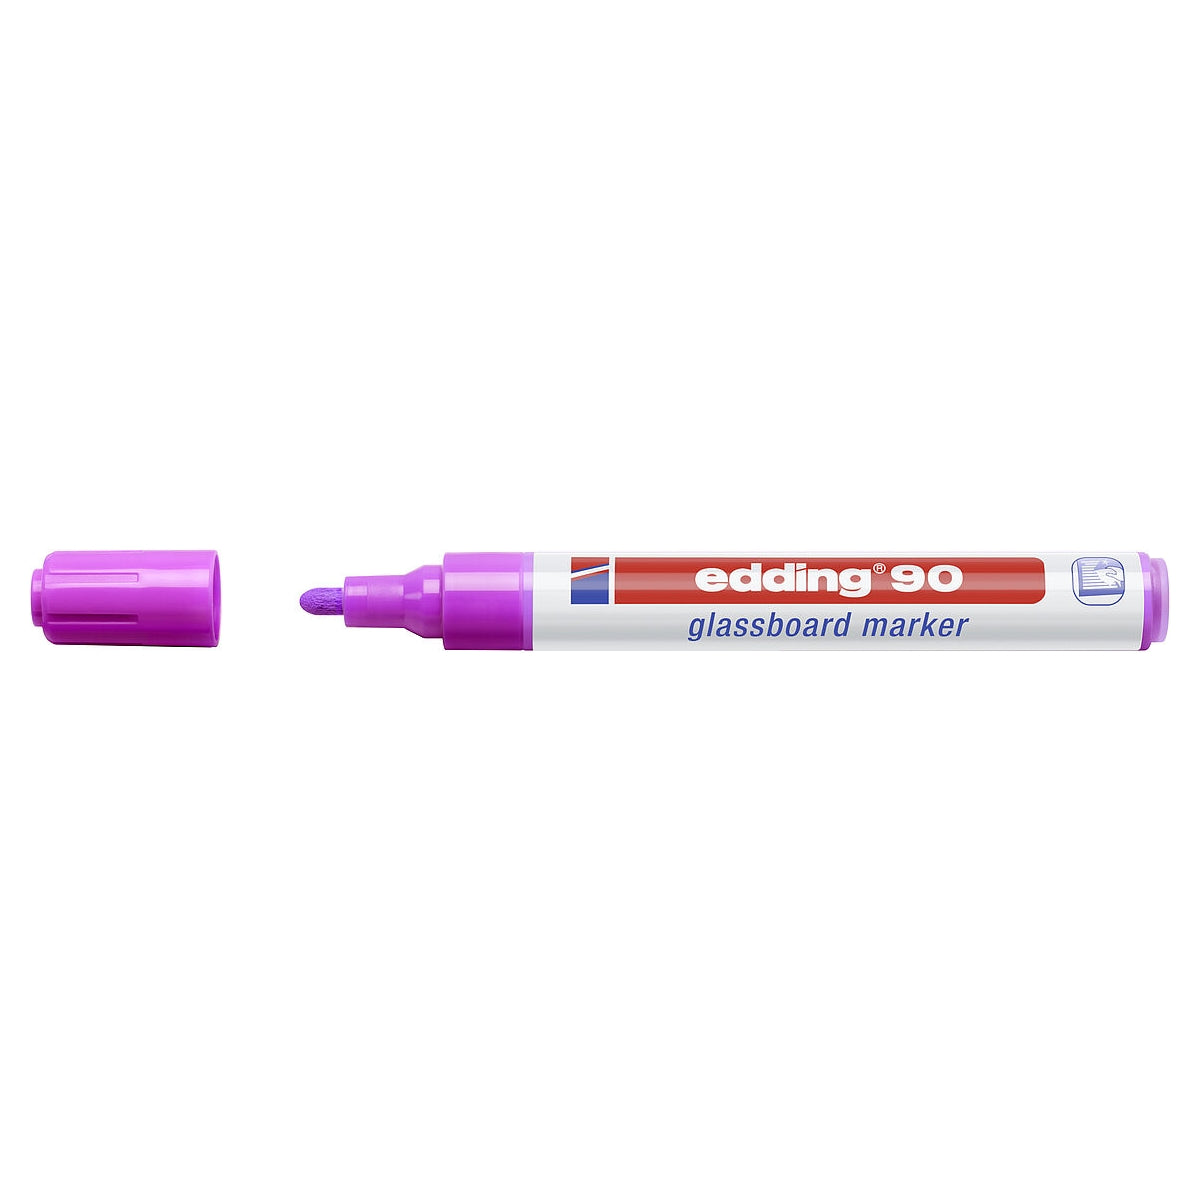 edding 90 Glassboard Marker, 2-3mm Bullet Tip, Violet